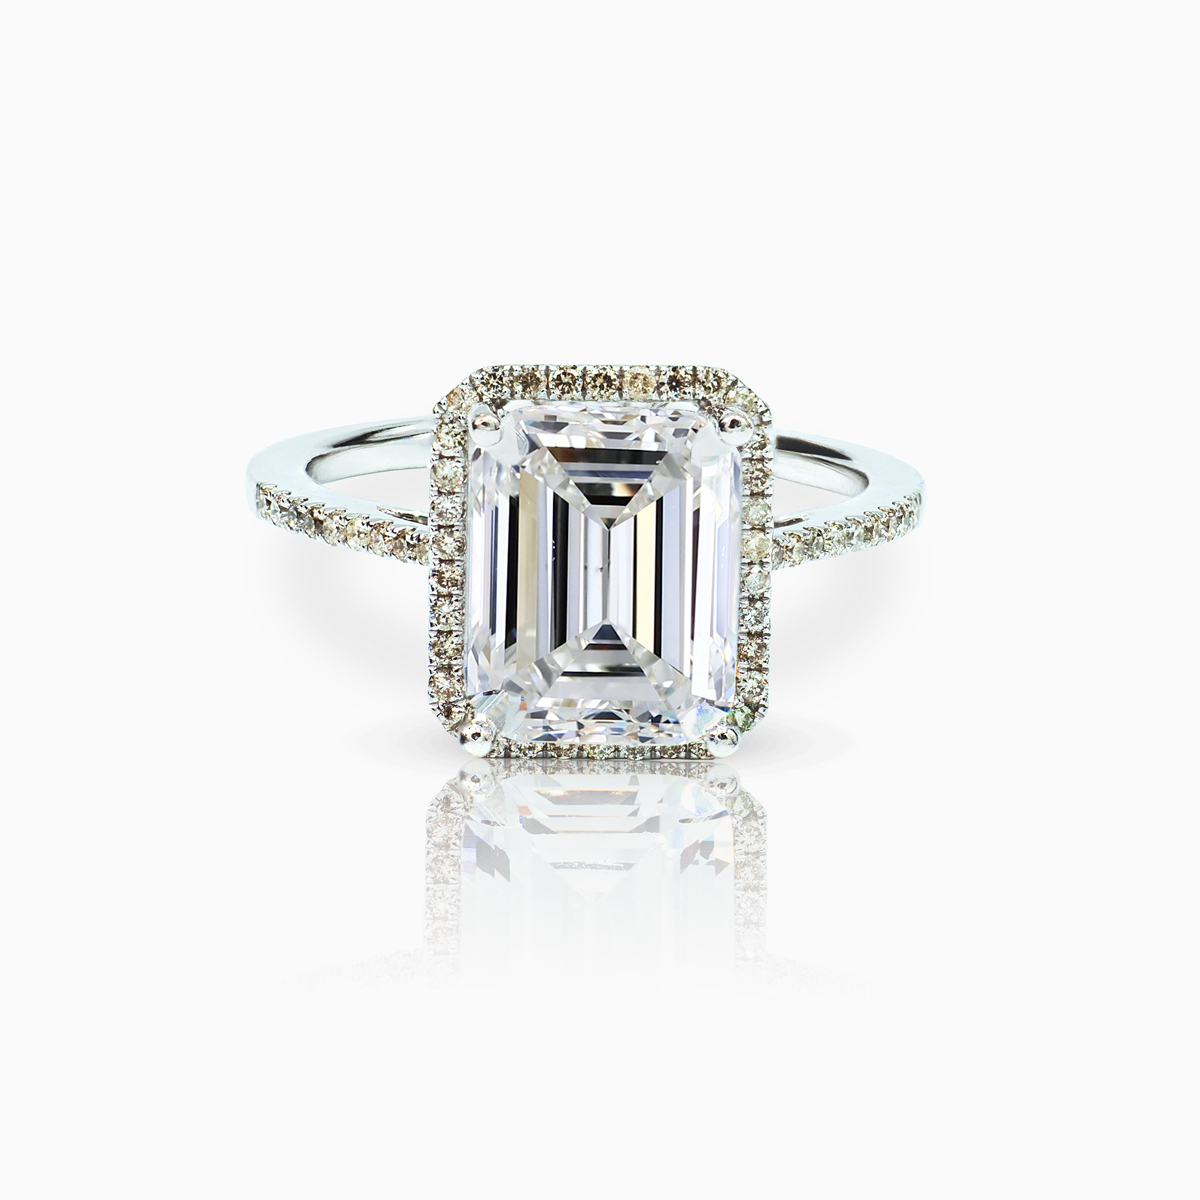 Diamond Halo Ring in 18k White Gold